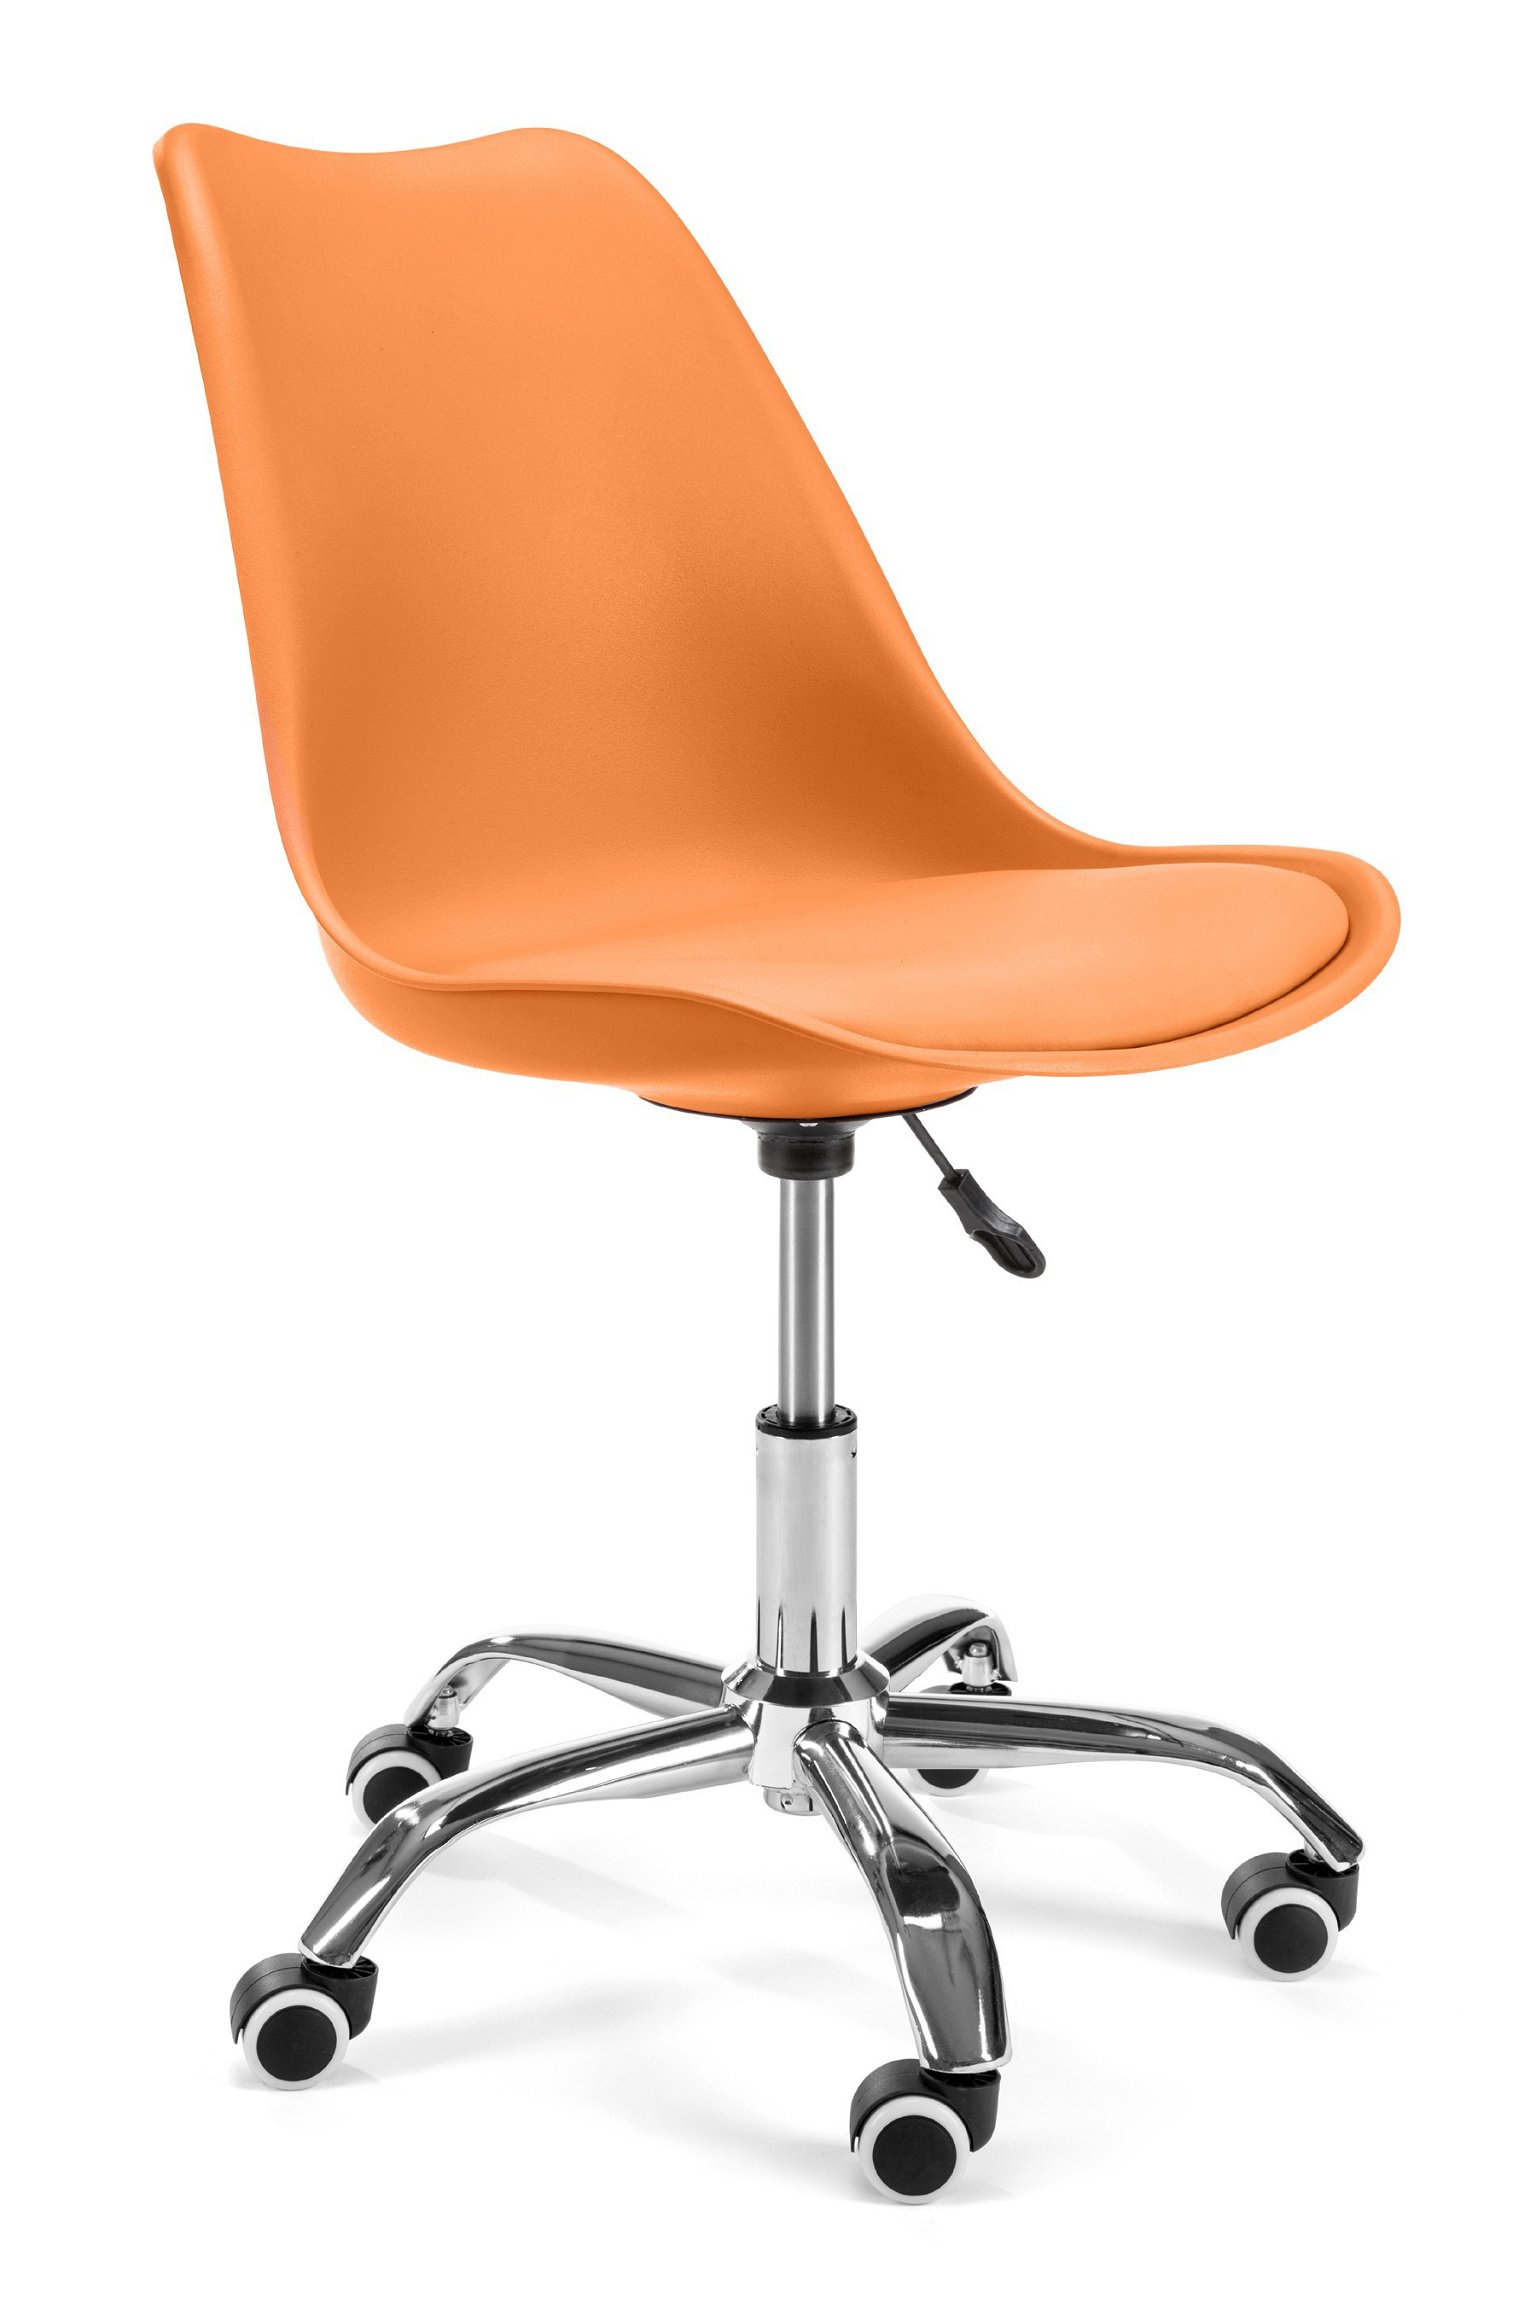 Vaikiška kėdė FD005, oranžinė